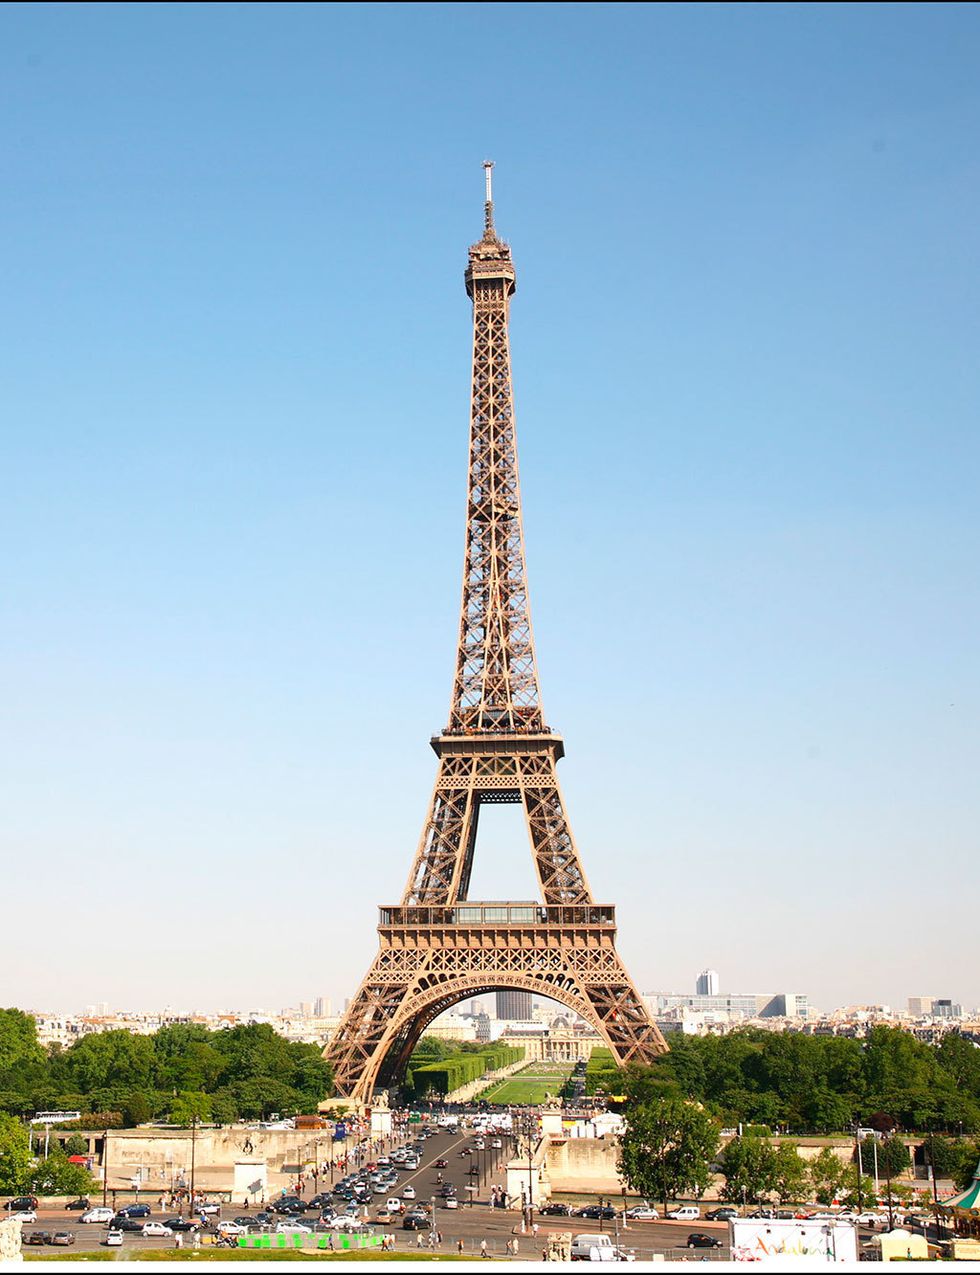 <p>&nbsp;La Torre Eiffel sirvió como presentación a la Exposición Universal de París de 1889. En un principio iba a tener una vida de 20 años y se destruiría, pero la instalación de antenas en su cima hicieron que fuese un monumento de gran utilidad. Ello le valió perdurar para siempre.</p>